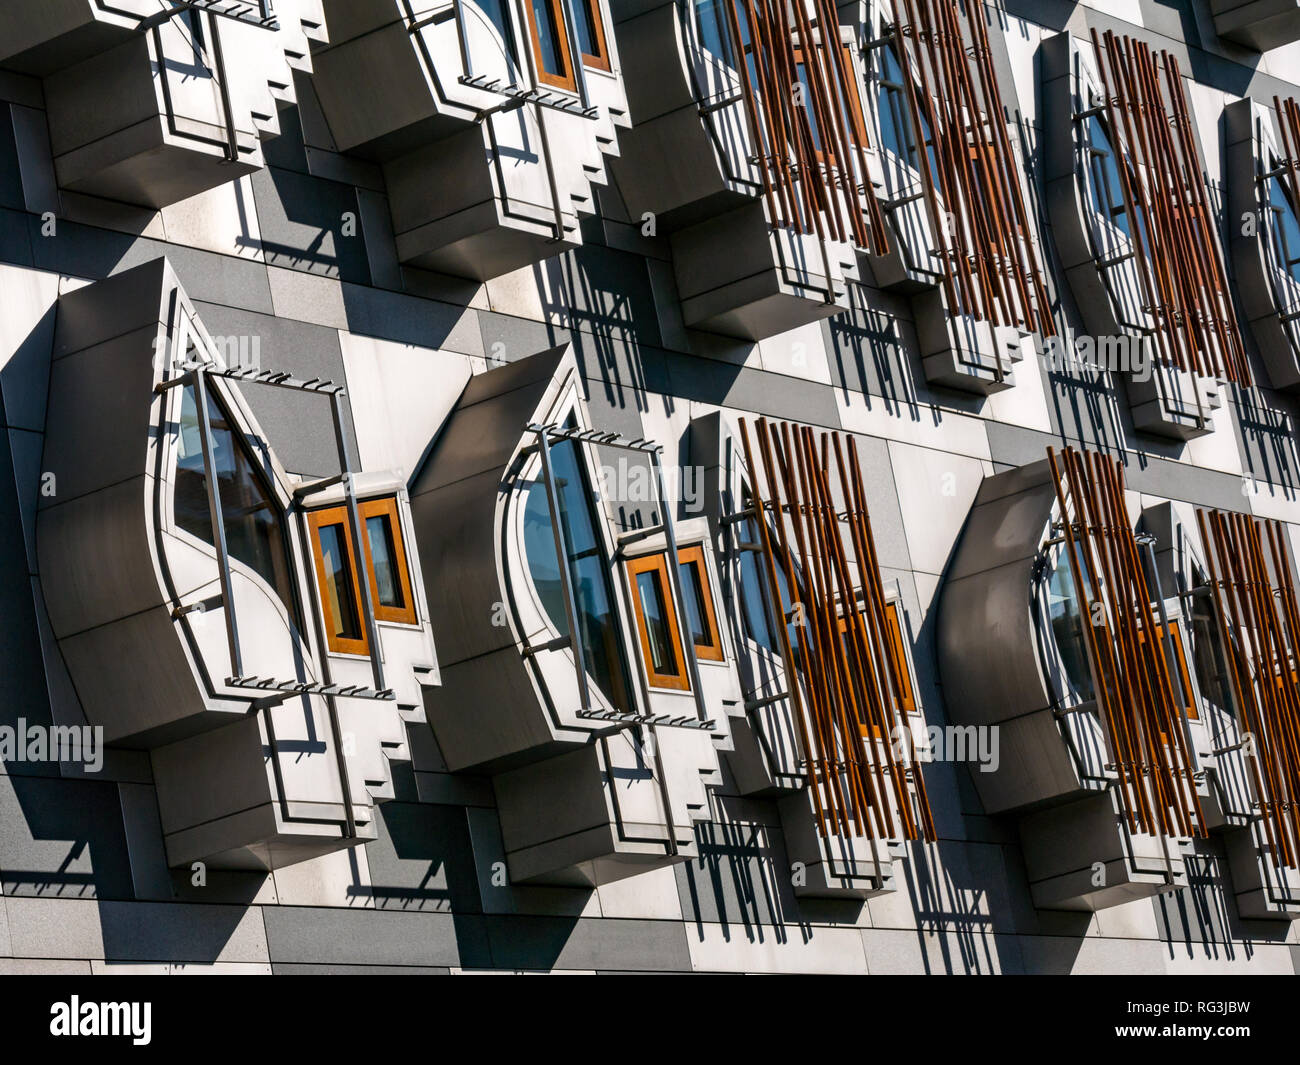 Schrullige Windows, denken Pods oder Kontemplation Räume, Schottisches Parlamentsgebäude von dem katalanischen Architekt Enric Miralles, Edinburgh, Schottland konzipiert Stockfoto